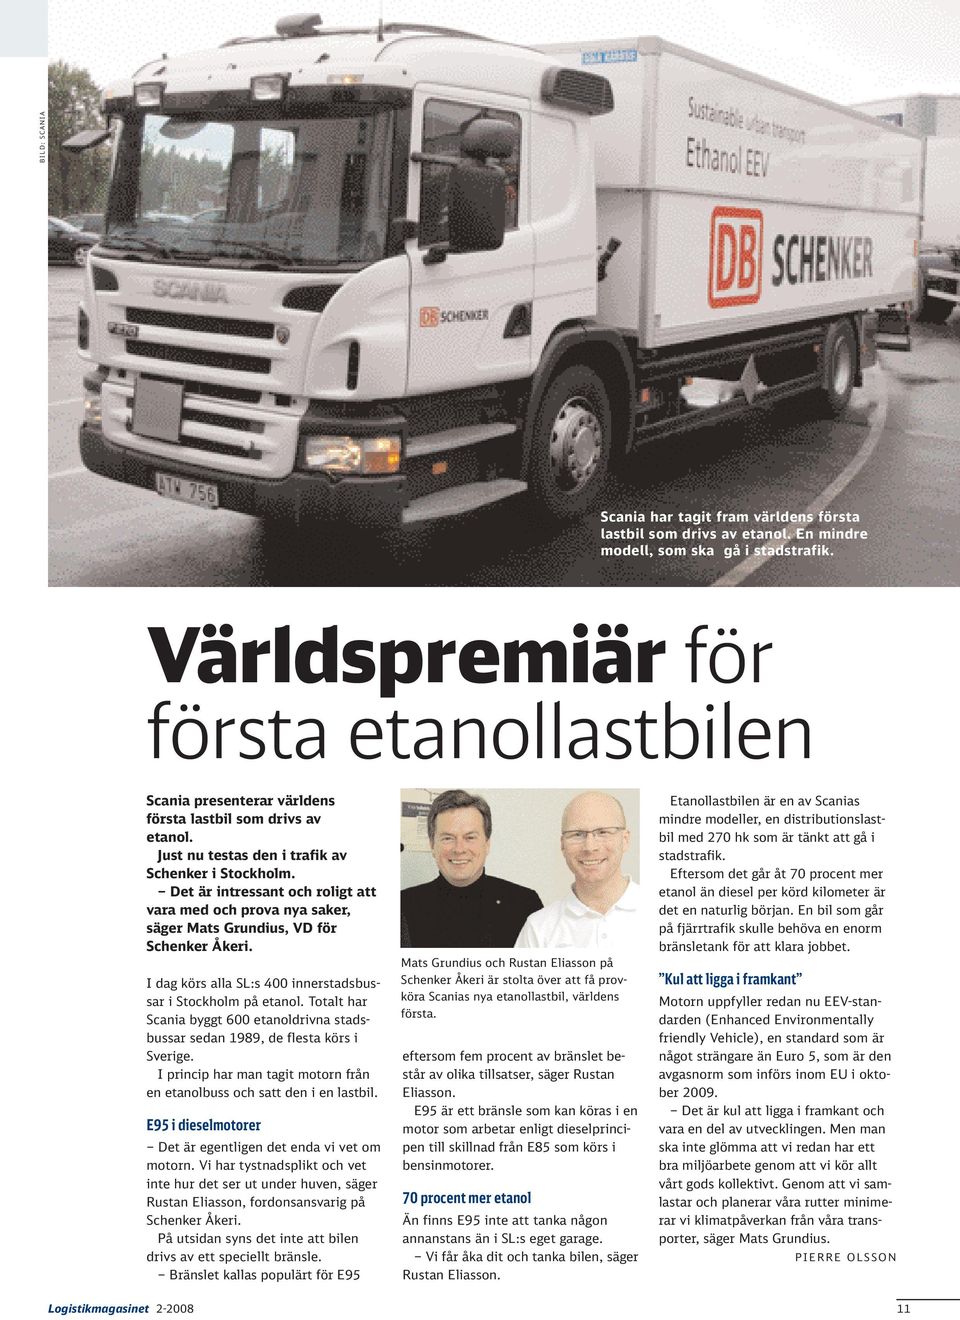 Det är intressant och roligt att vara med och prova nya saker, säger Mats Grundius, VD för Schenker Åkeri. I dag körs alla SL:s 400 innerstadsbussar i Stockholm på etanol.